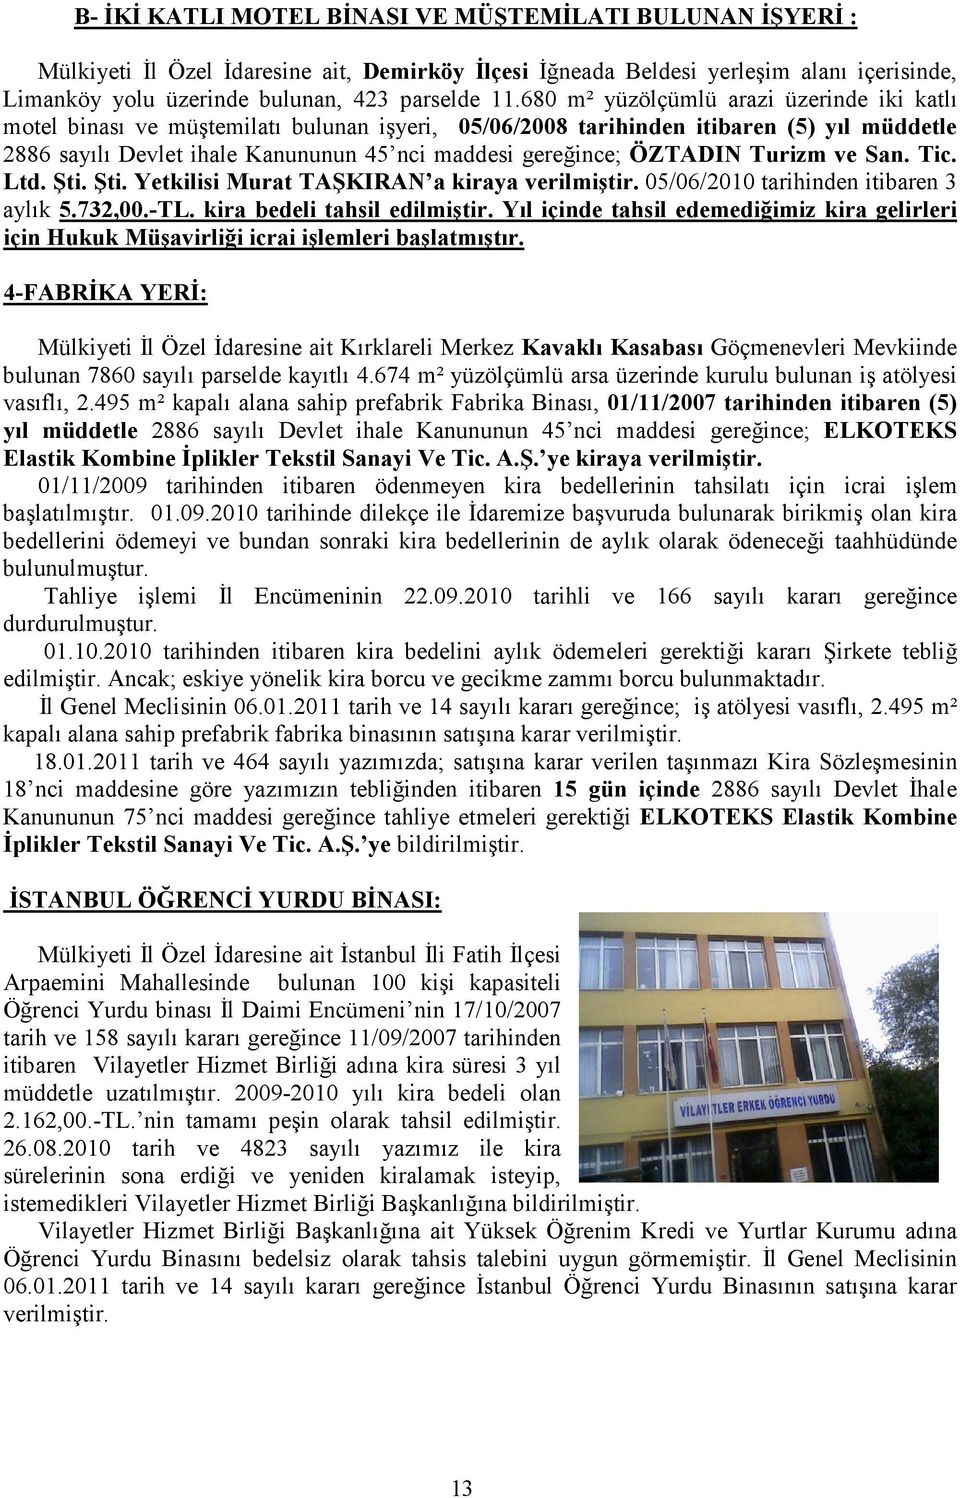 ÖZTADIN Turizm ve San. Tic. Ltd. Şti. Şti. Yetkilisi Murat TAŞKIRAN a kiraya verilmiştir. 05/06/2010 tarihinden itibaren 3 aylık 5.732,00.-TL. kira bedeli tahsil edilmiştir.